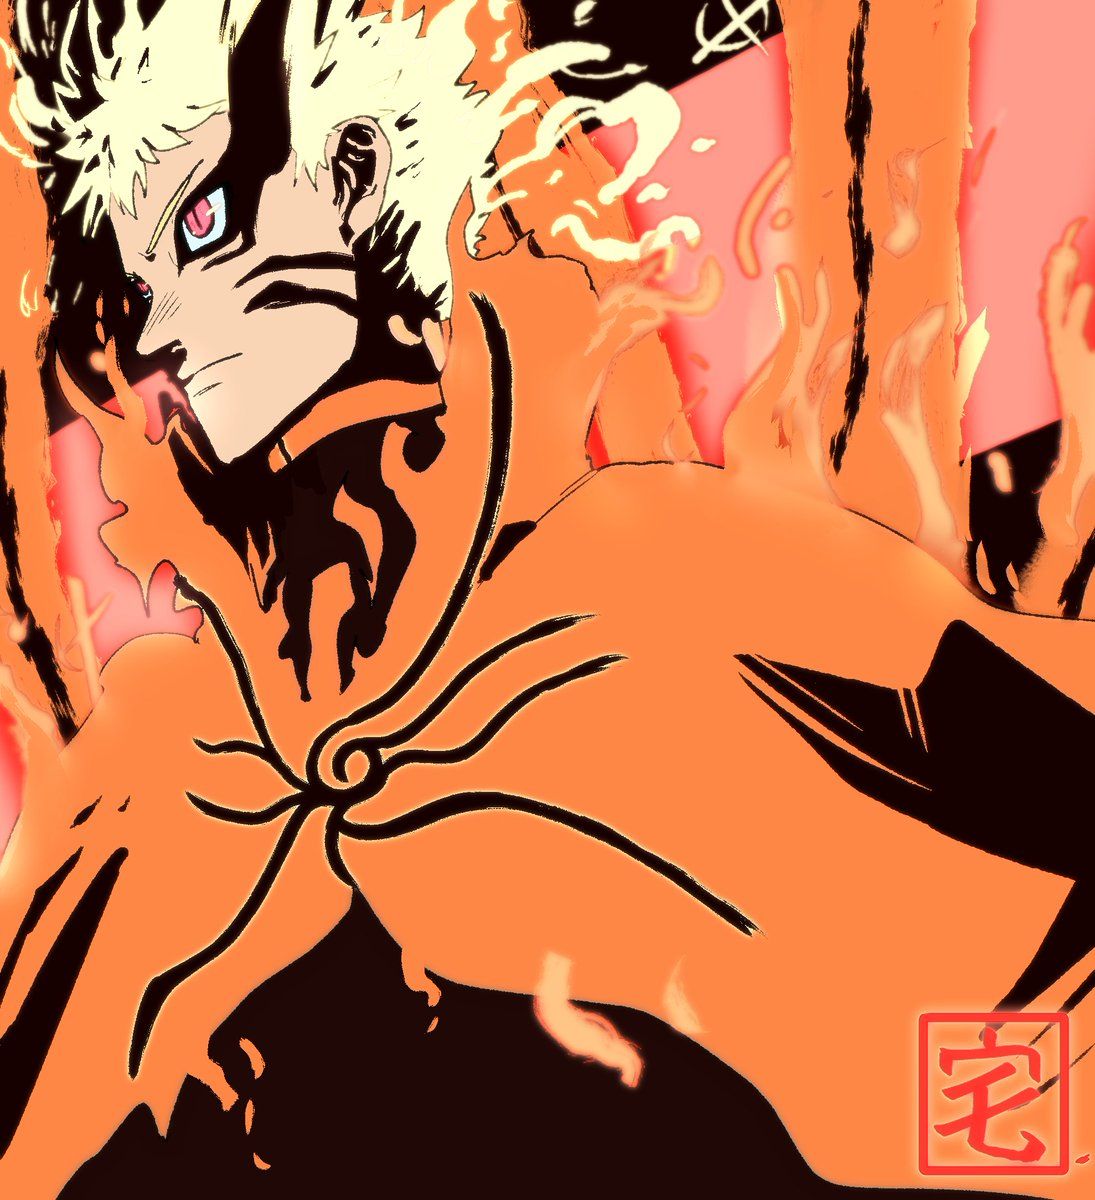 ✟ᵀᴬᴷᵁ✟ Hokage's Final stand. Kurama and Naruto, BARYON MODE !